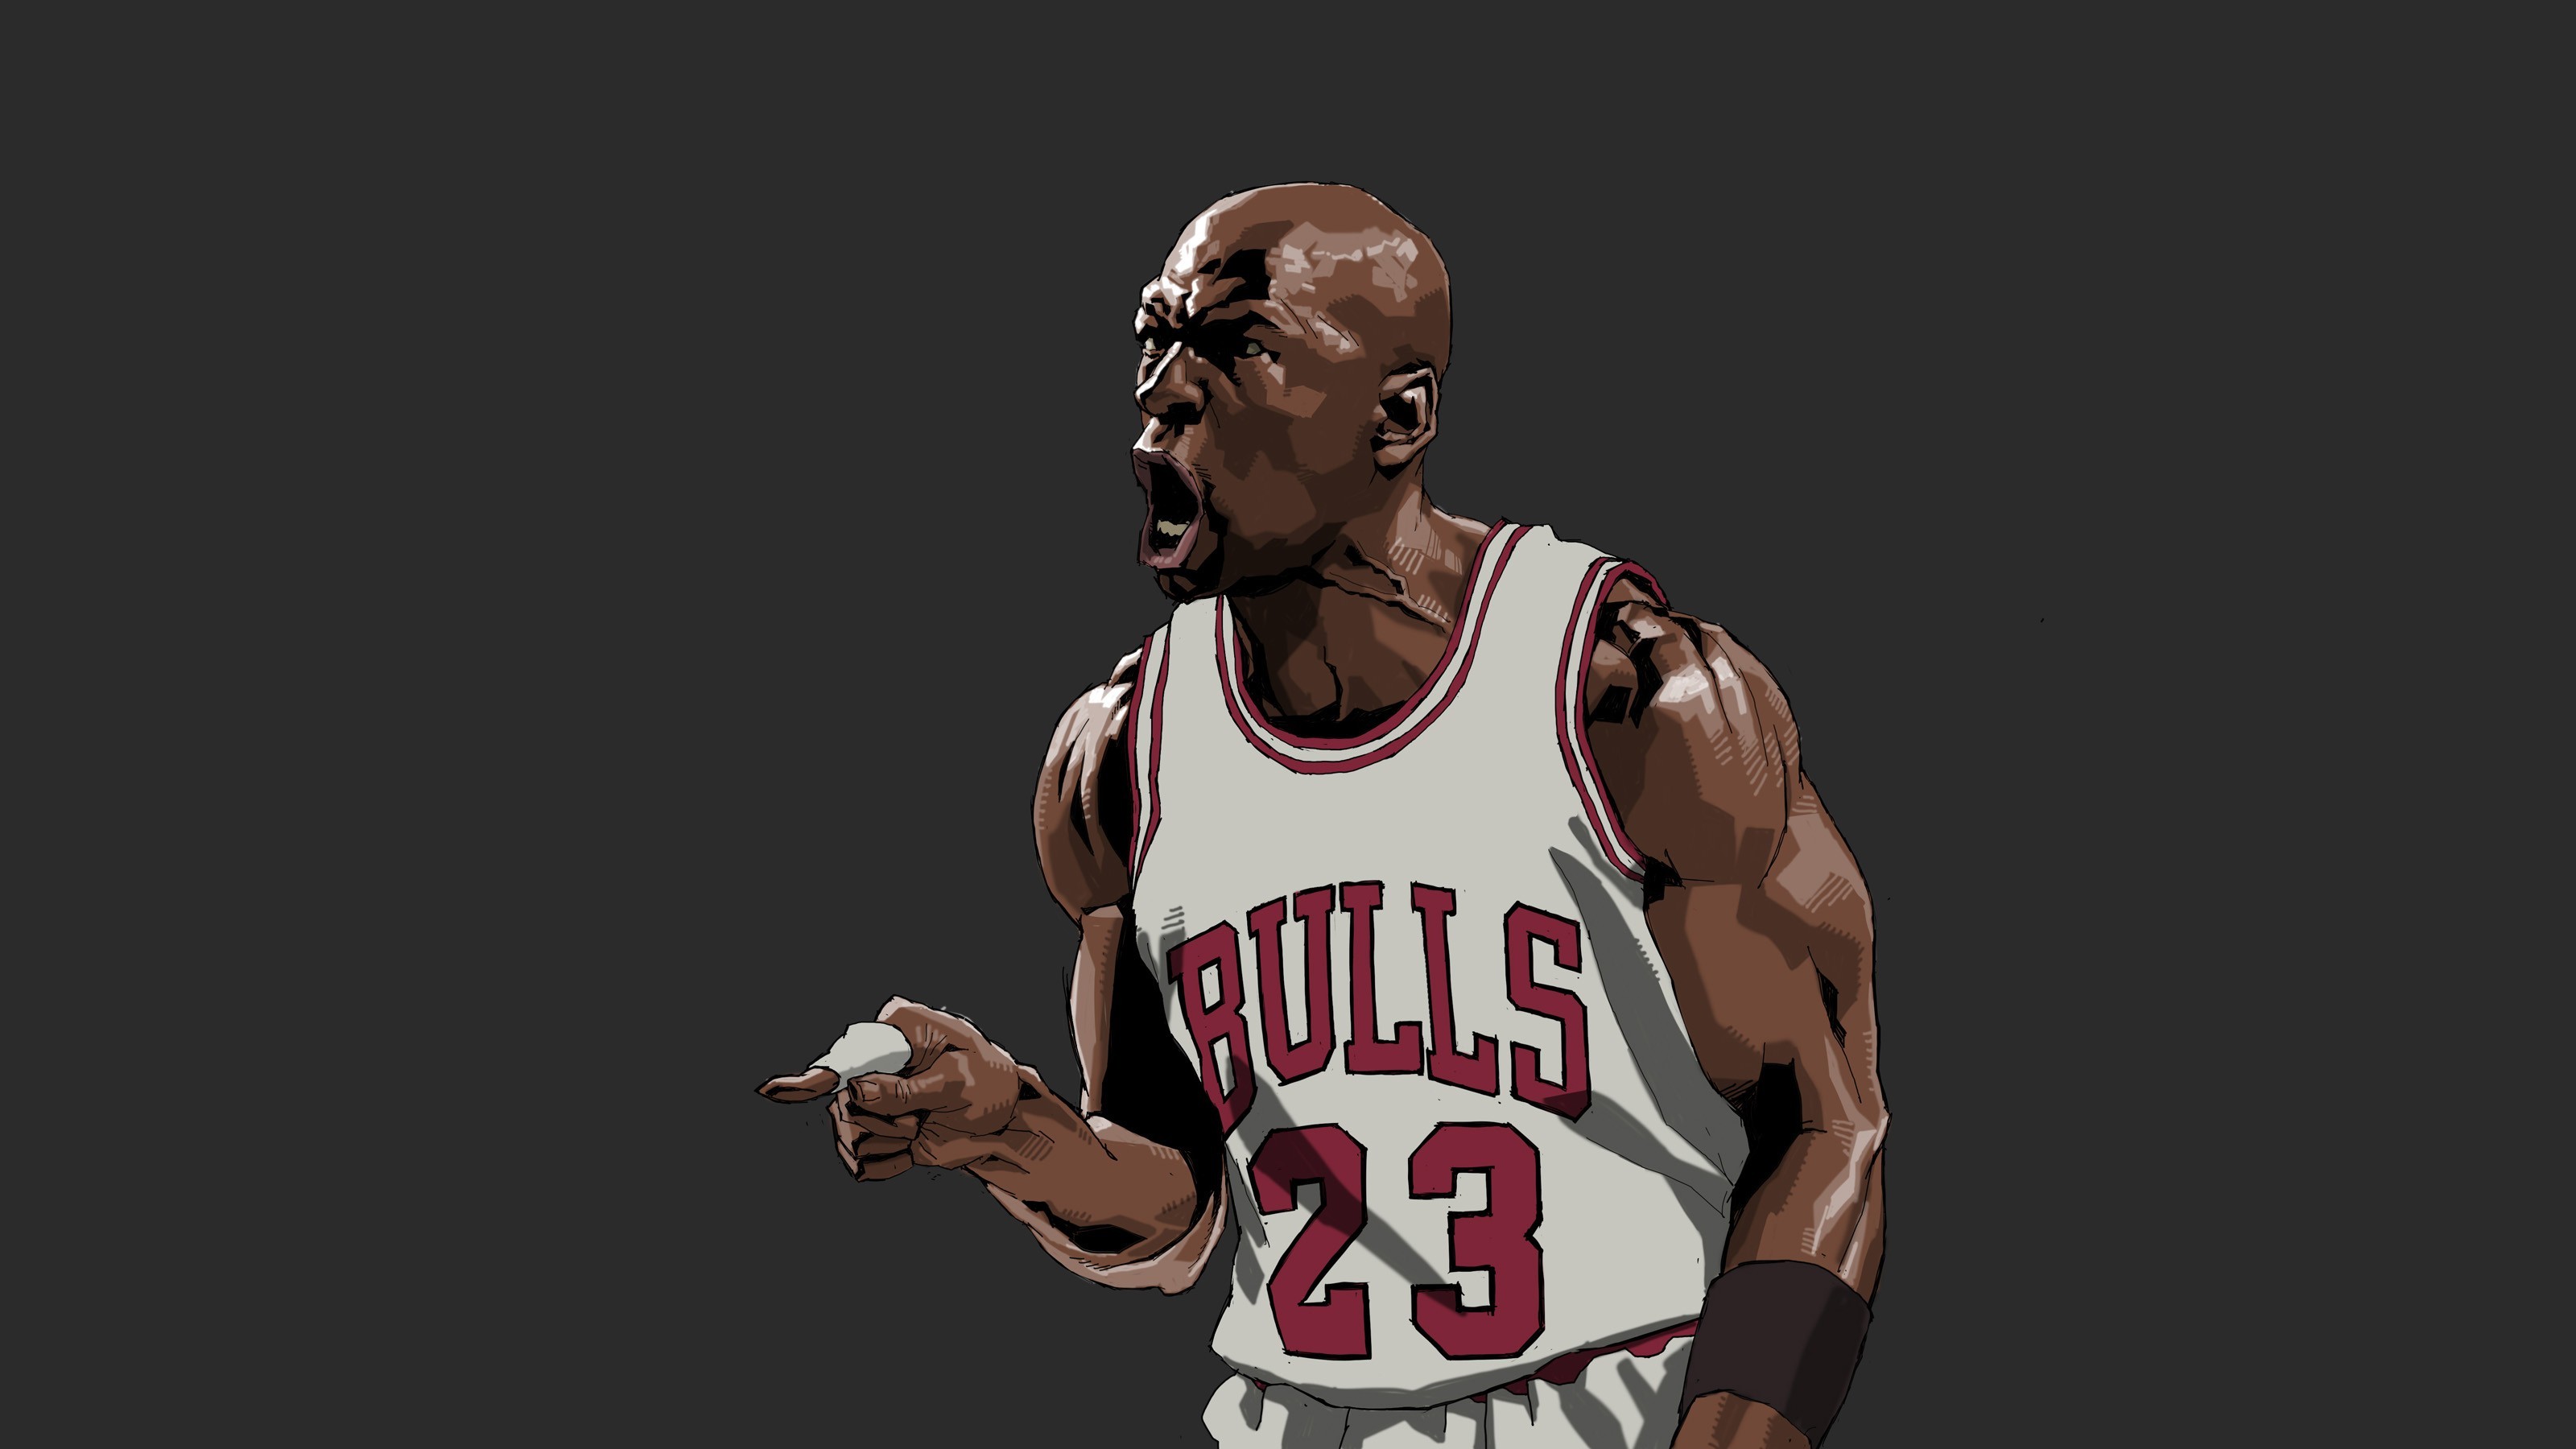 NBA, Michael Jordan Wallpapers HD / Desktop and Mobile